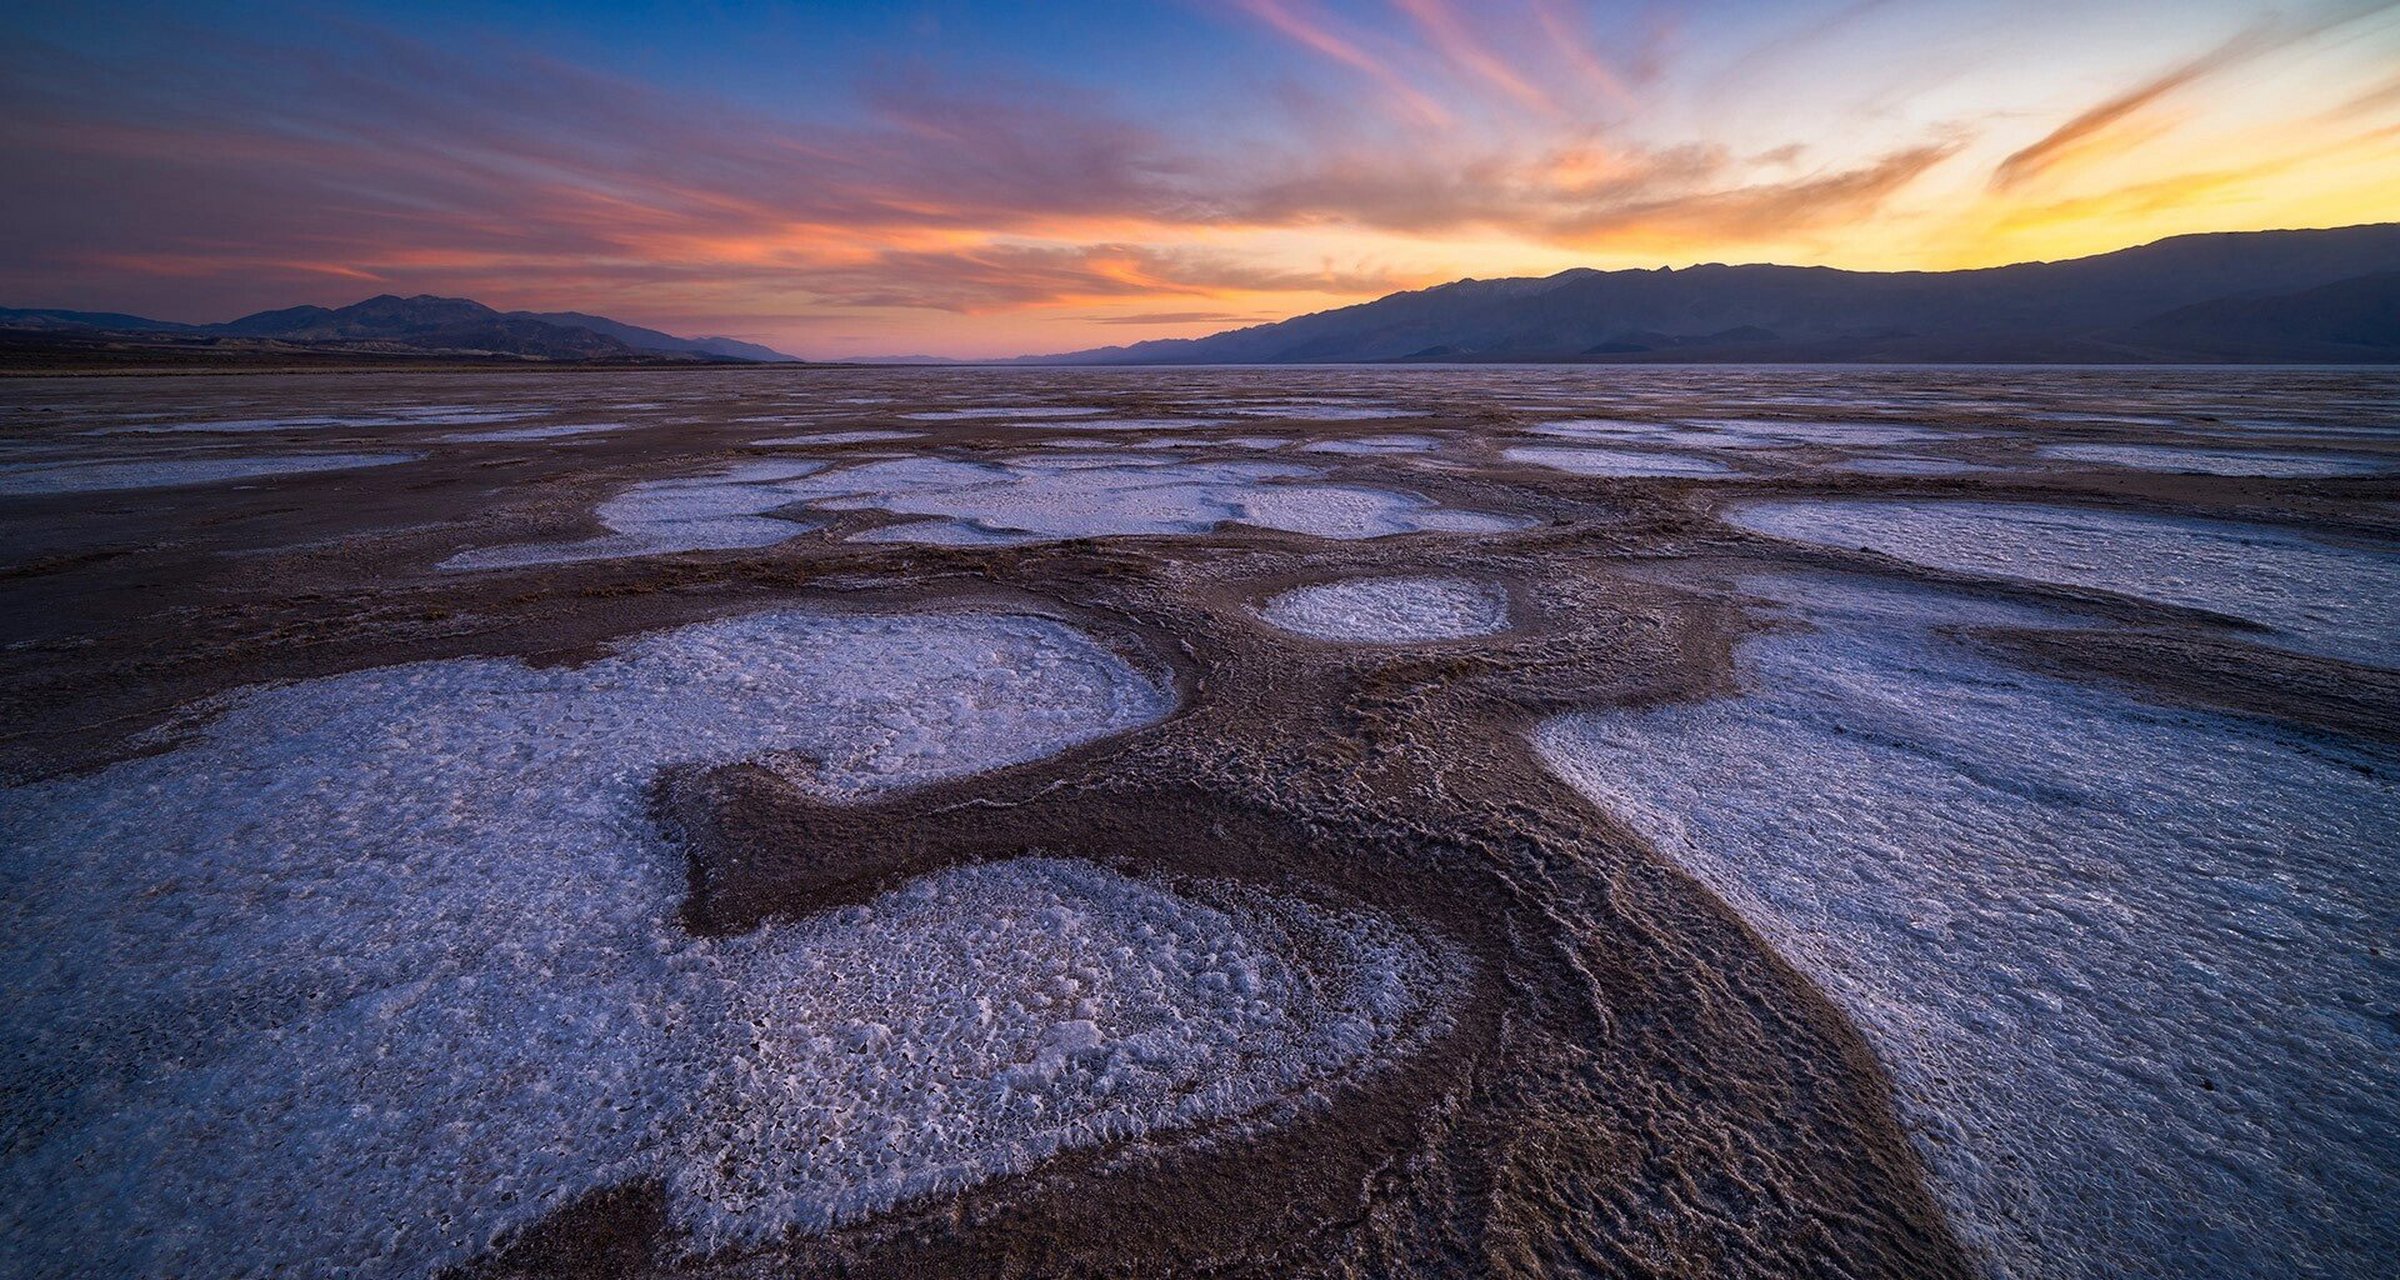 美国,加利福尼亚州,死亡谷国家公园 沙漠烈日下,恶水盆地的盐滩绵延数